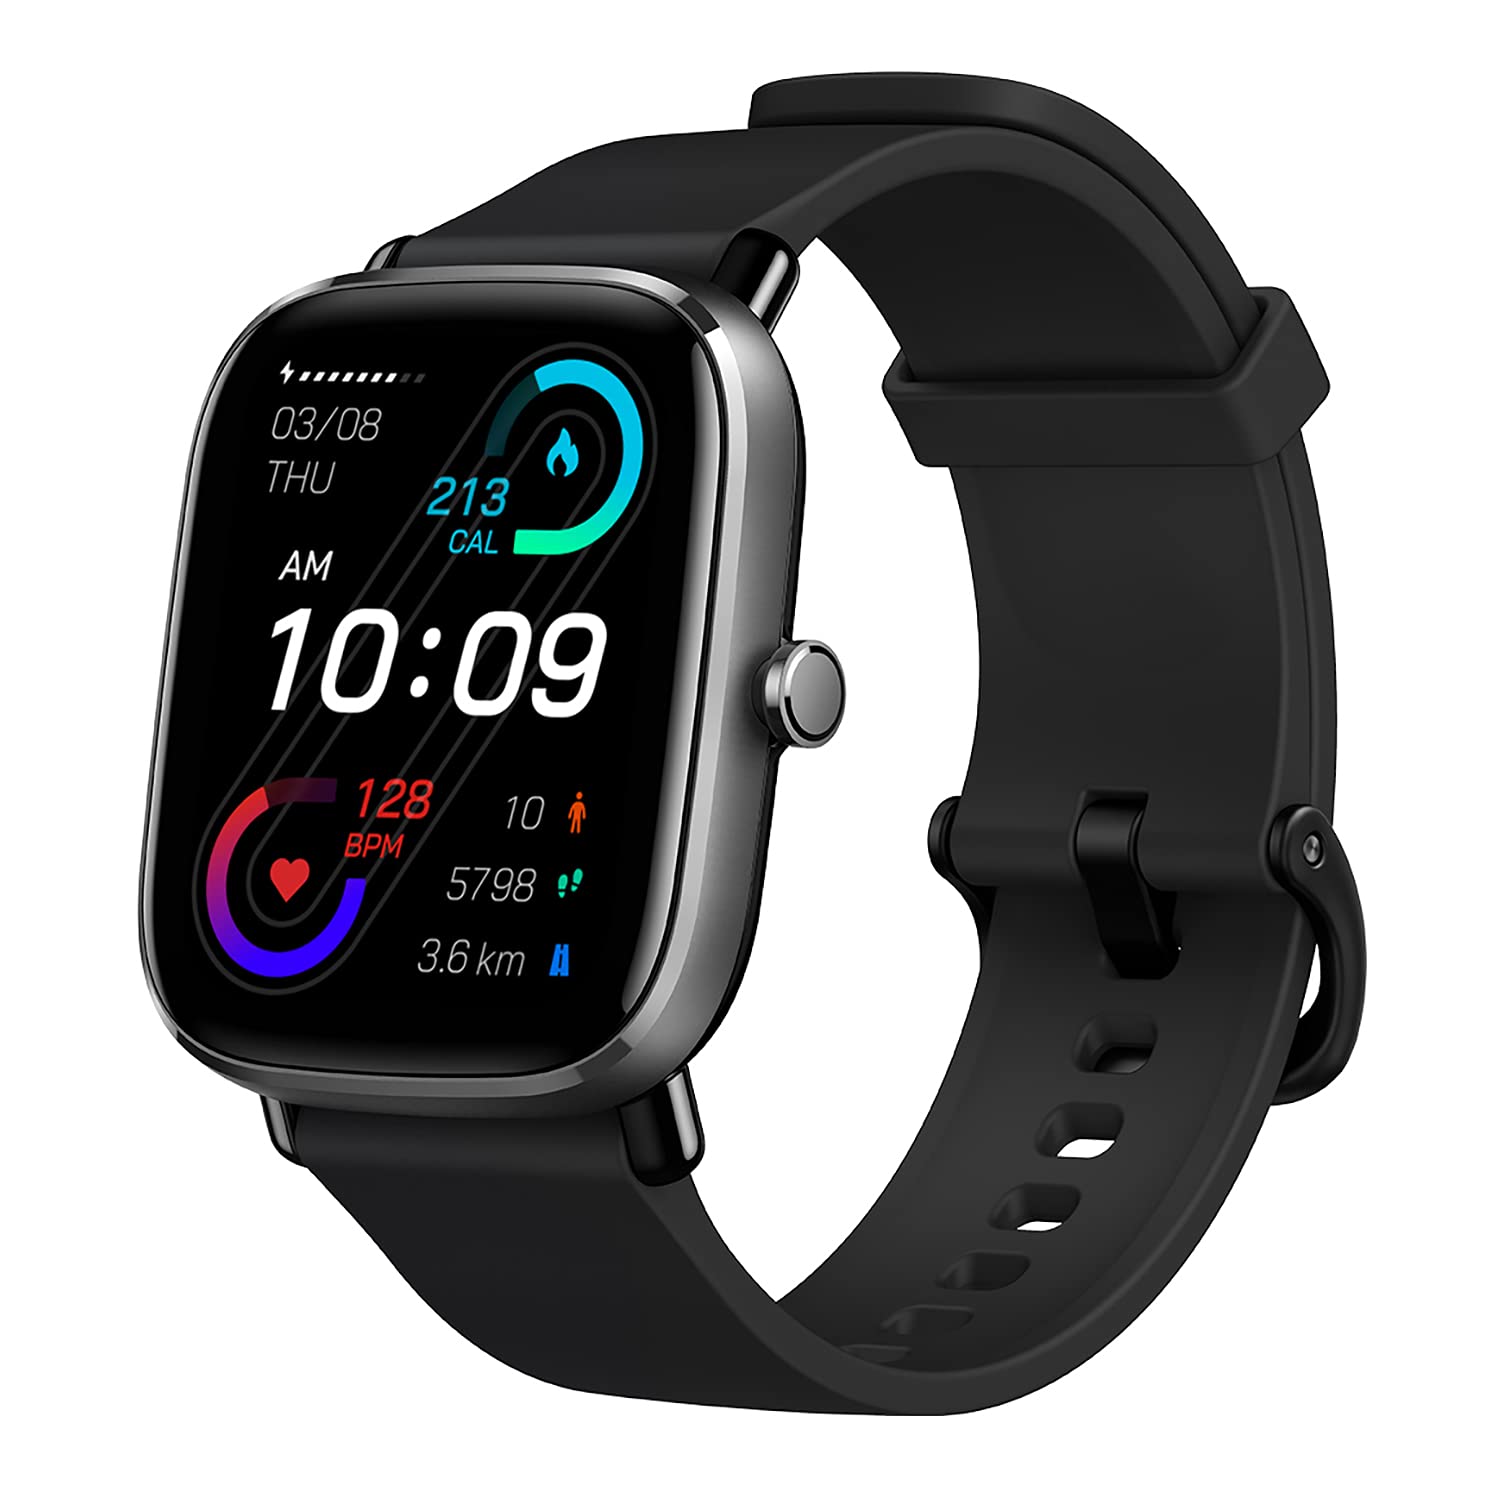 Amazfit GTS 2 Mini Smart Watch: Amazfit GTS 2 Mini Smart Watch là sự lựa chọn hoàn hảo cho những người yêu thích thể thao và tính năng giám sát sức khỏe cao cấp. Với thiết kế nhỏ gọn và tiện dụng, đồng hồ giúp bạn theo dõi các hoạt động hàng ngày của mình một cách hiệu quả và đầy thú vị.